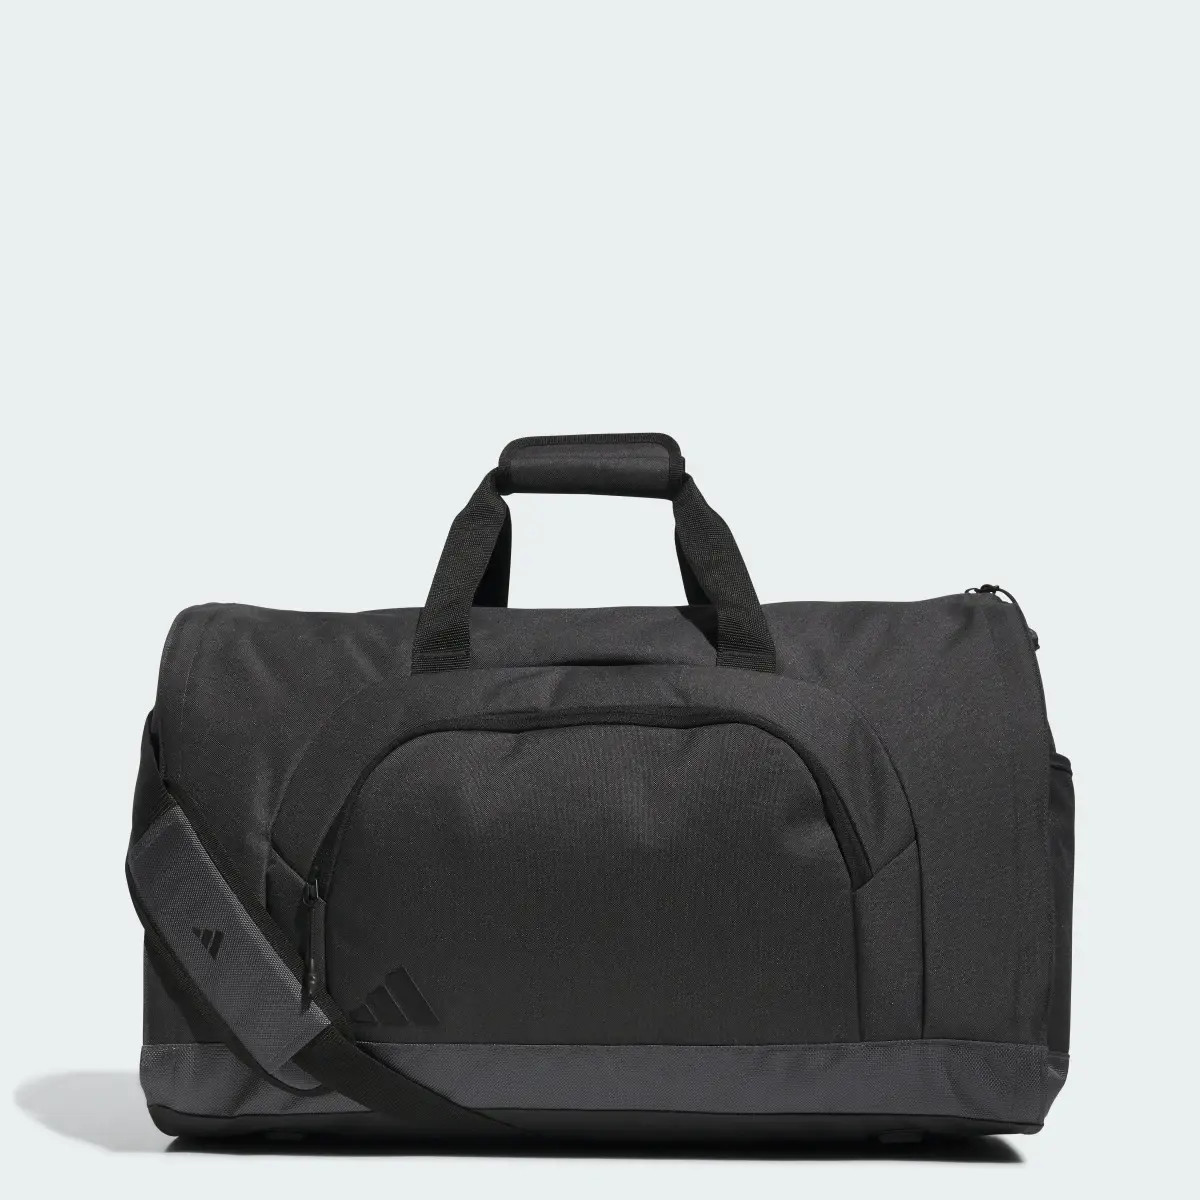 Adidas Garment Duffel Bag. 1